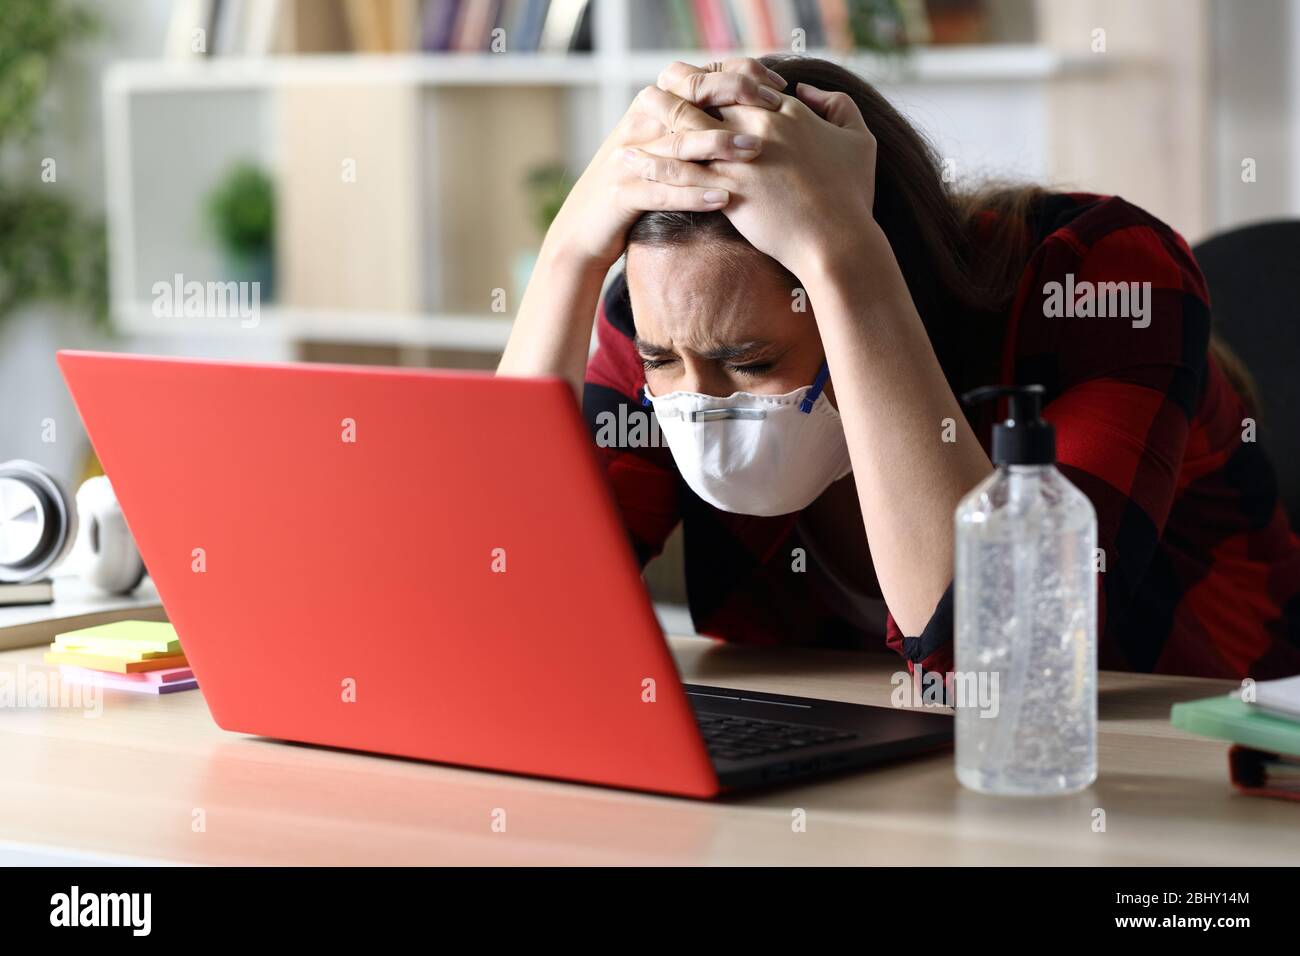 Donna studentesca triste con maschera protettiva in quarantena di coronavirus che controlla il laptop seduto su una scrivania a casa Foto Stock